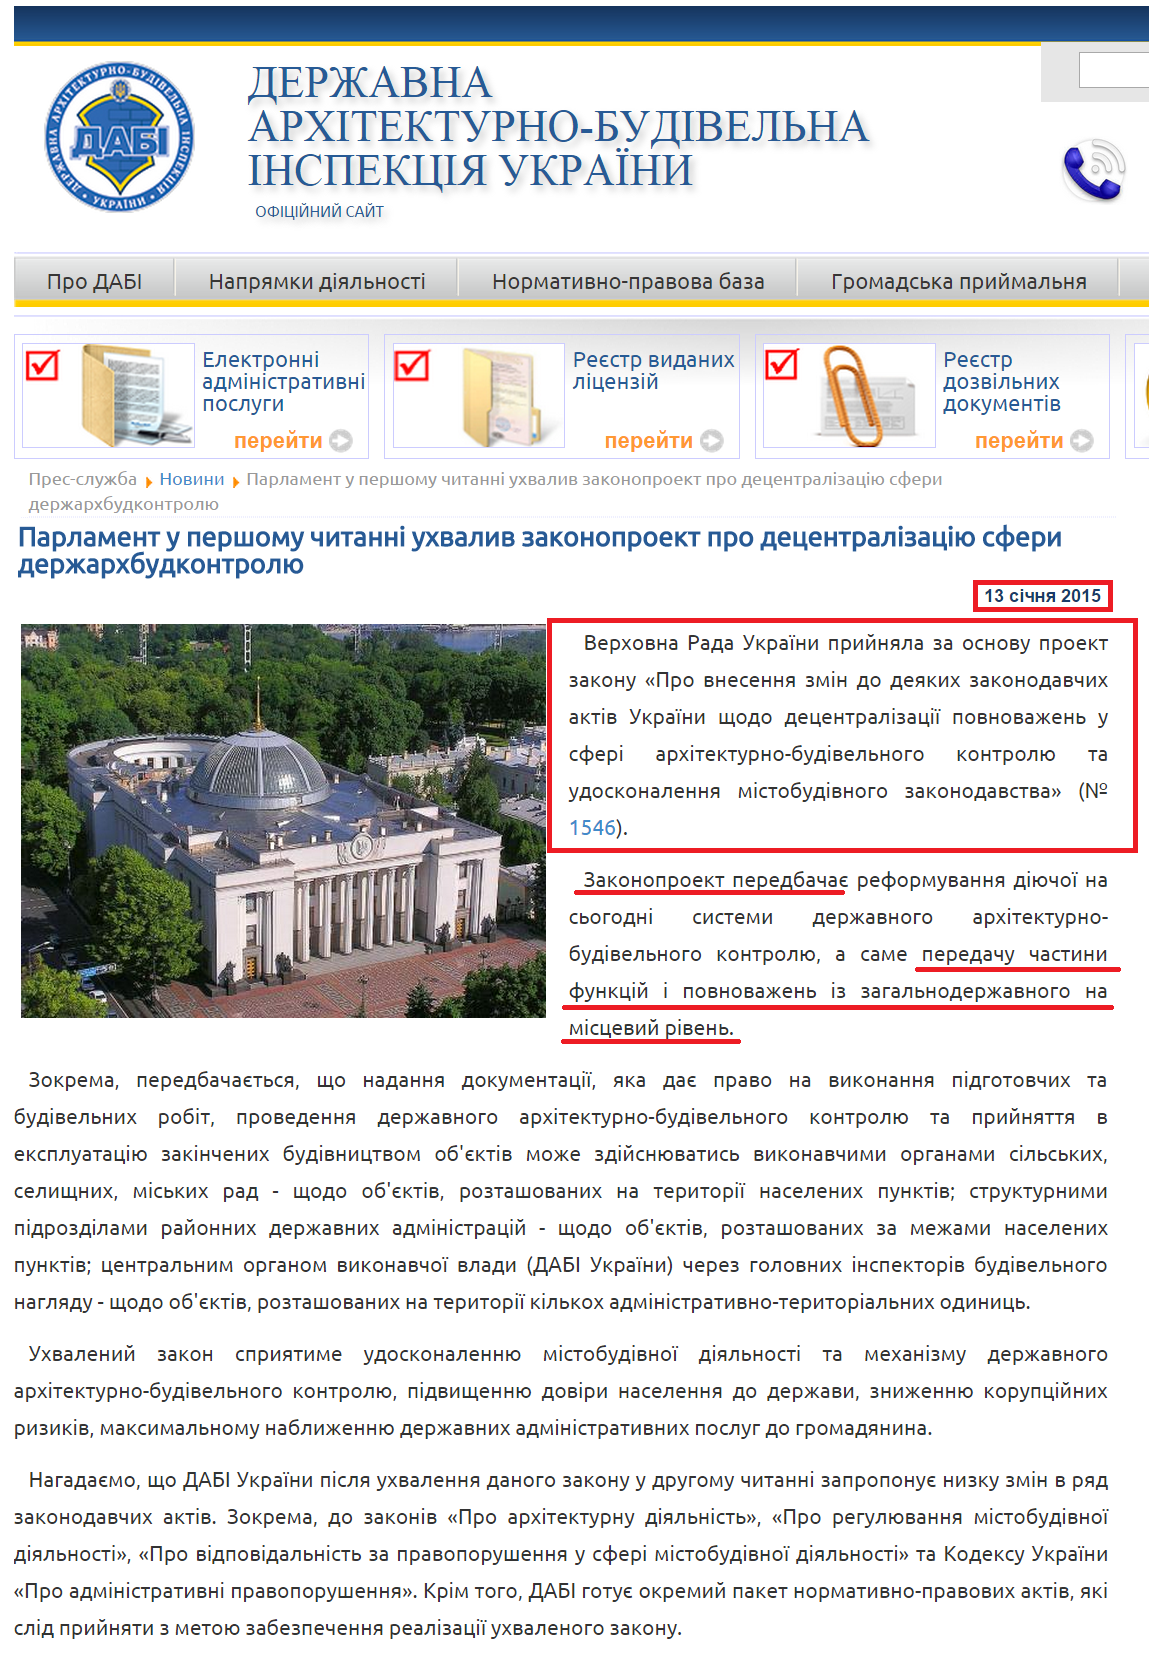 http://www.dabi.gov.ua/index.php/pres-sluzhba/novini/882-parlament-u-pershomu-chitanni-ukhvaliv-zakonoproekt-pro-detsentralizatsiyu-sferi-derzharkhbudkontrolyu